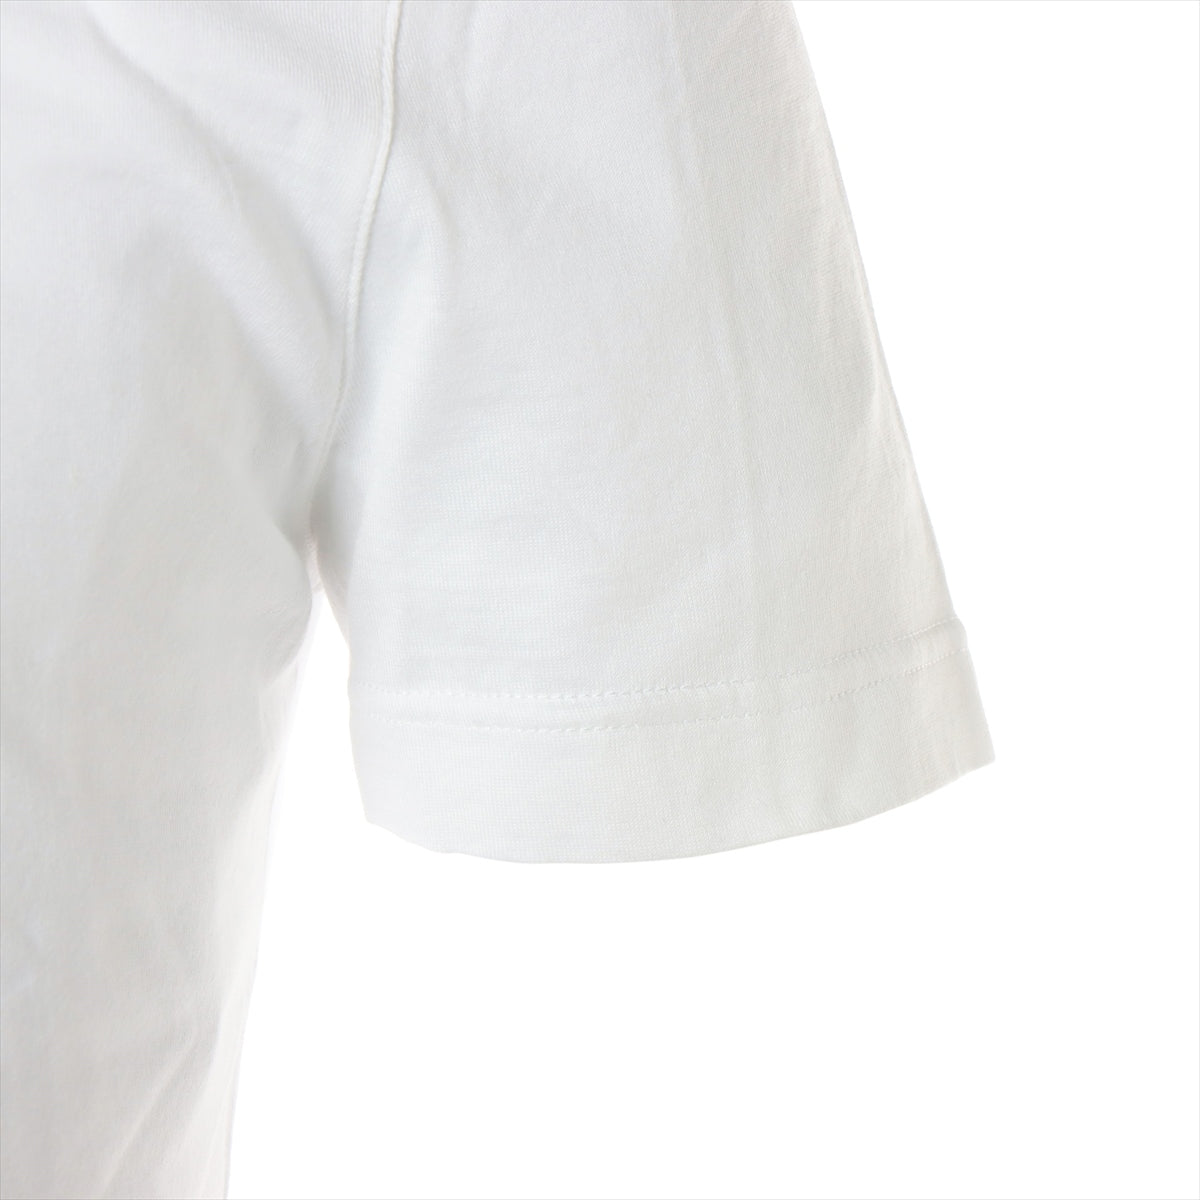 ルイヴィトン 18AW コットン Tシャツ XS メンズ ホワイト  クルーネック LVサークル RM182Q